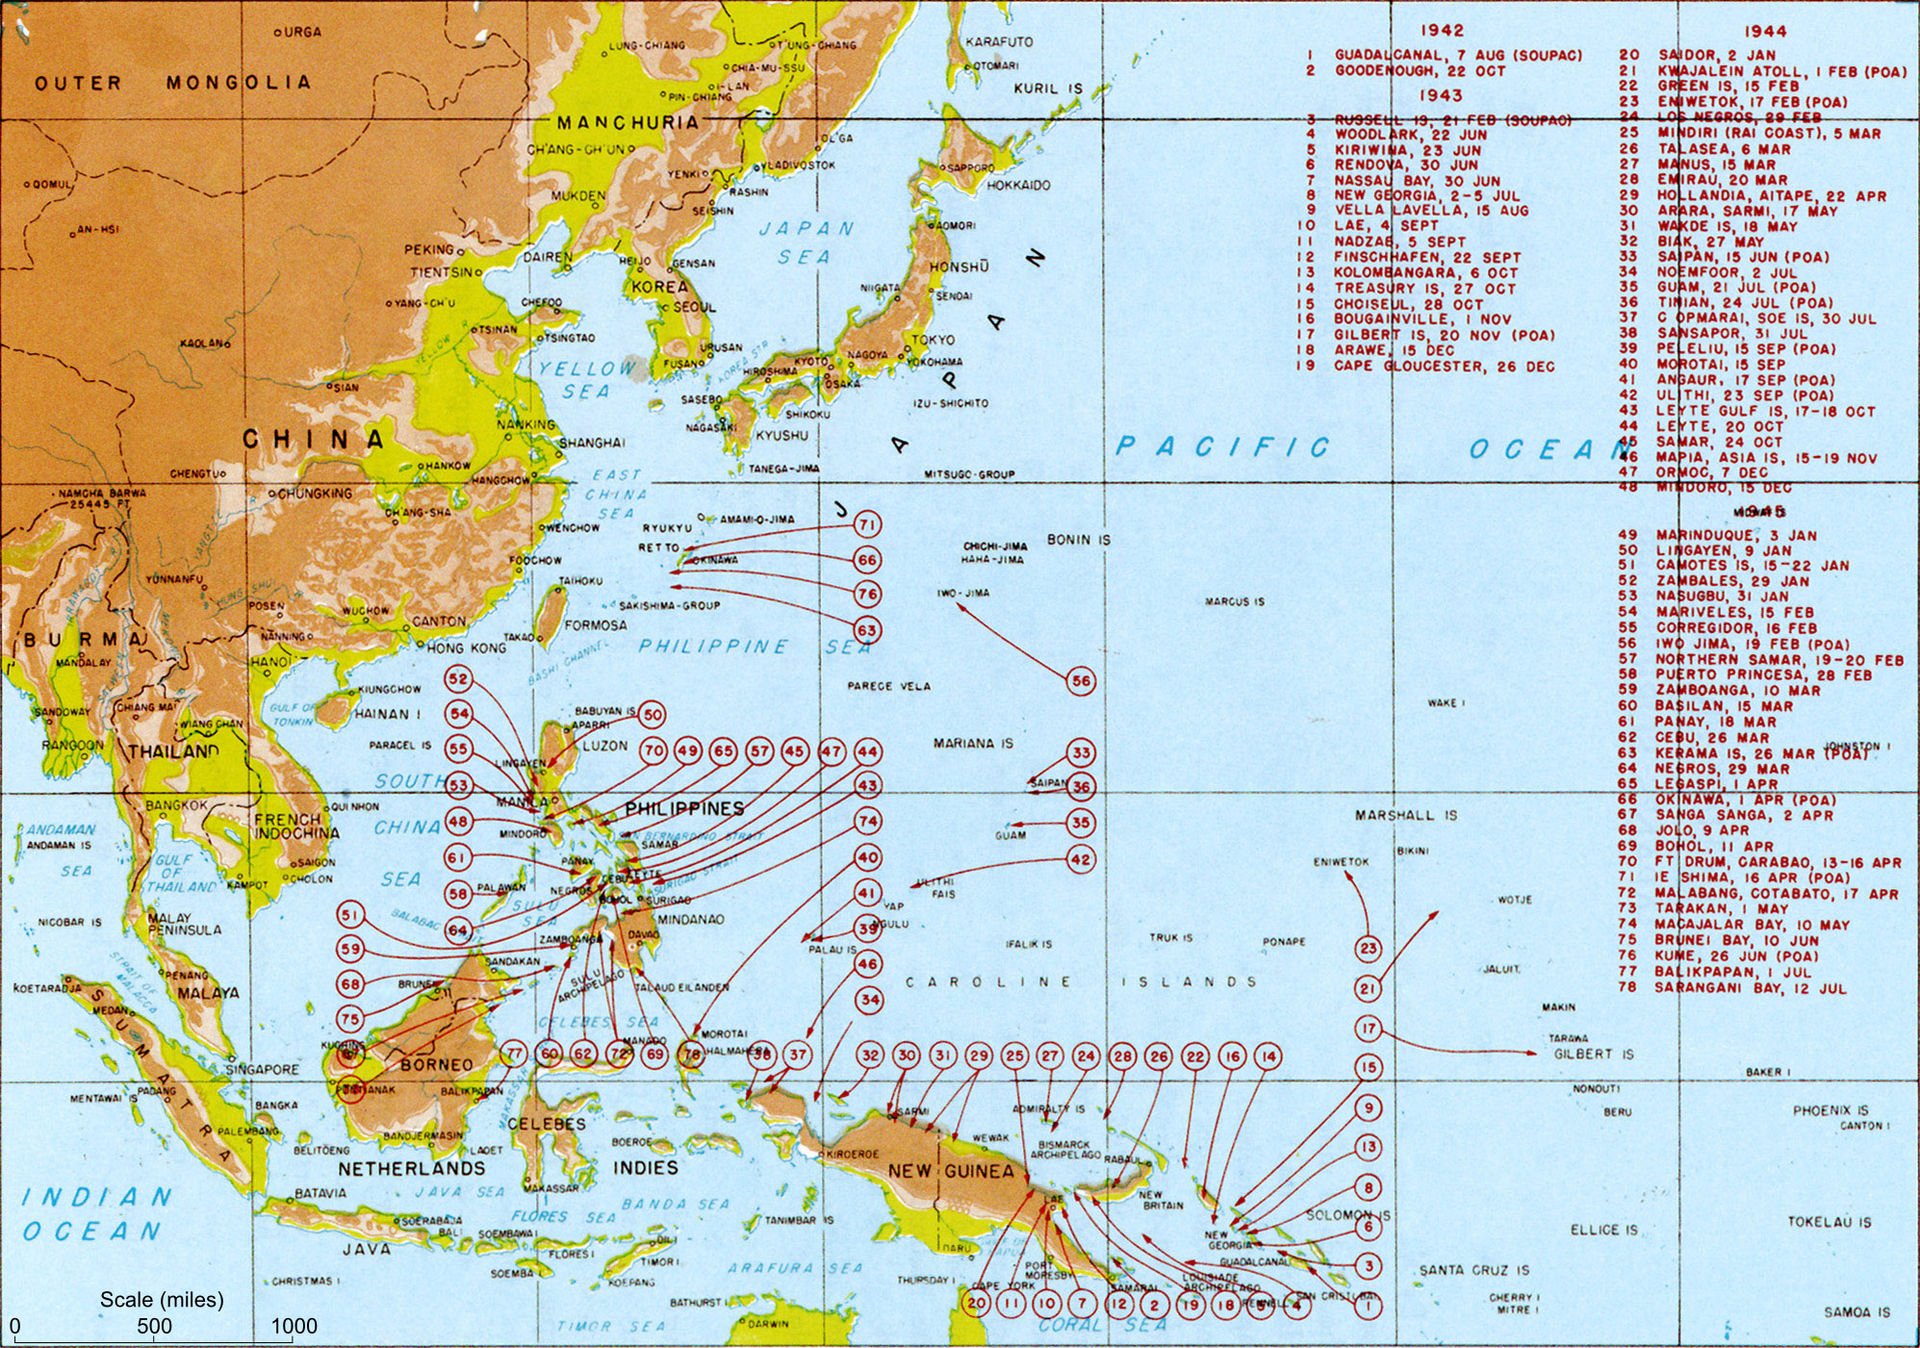 US Amphibious Landings in WWII.jpg